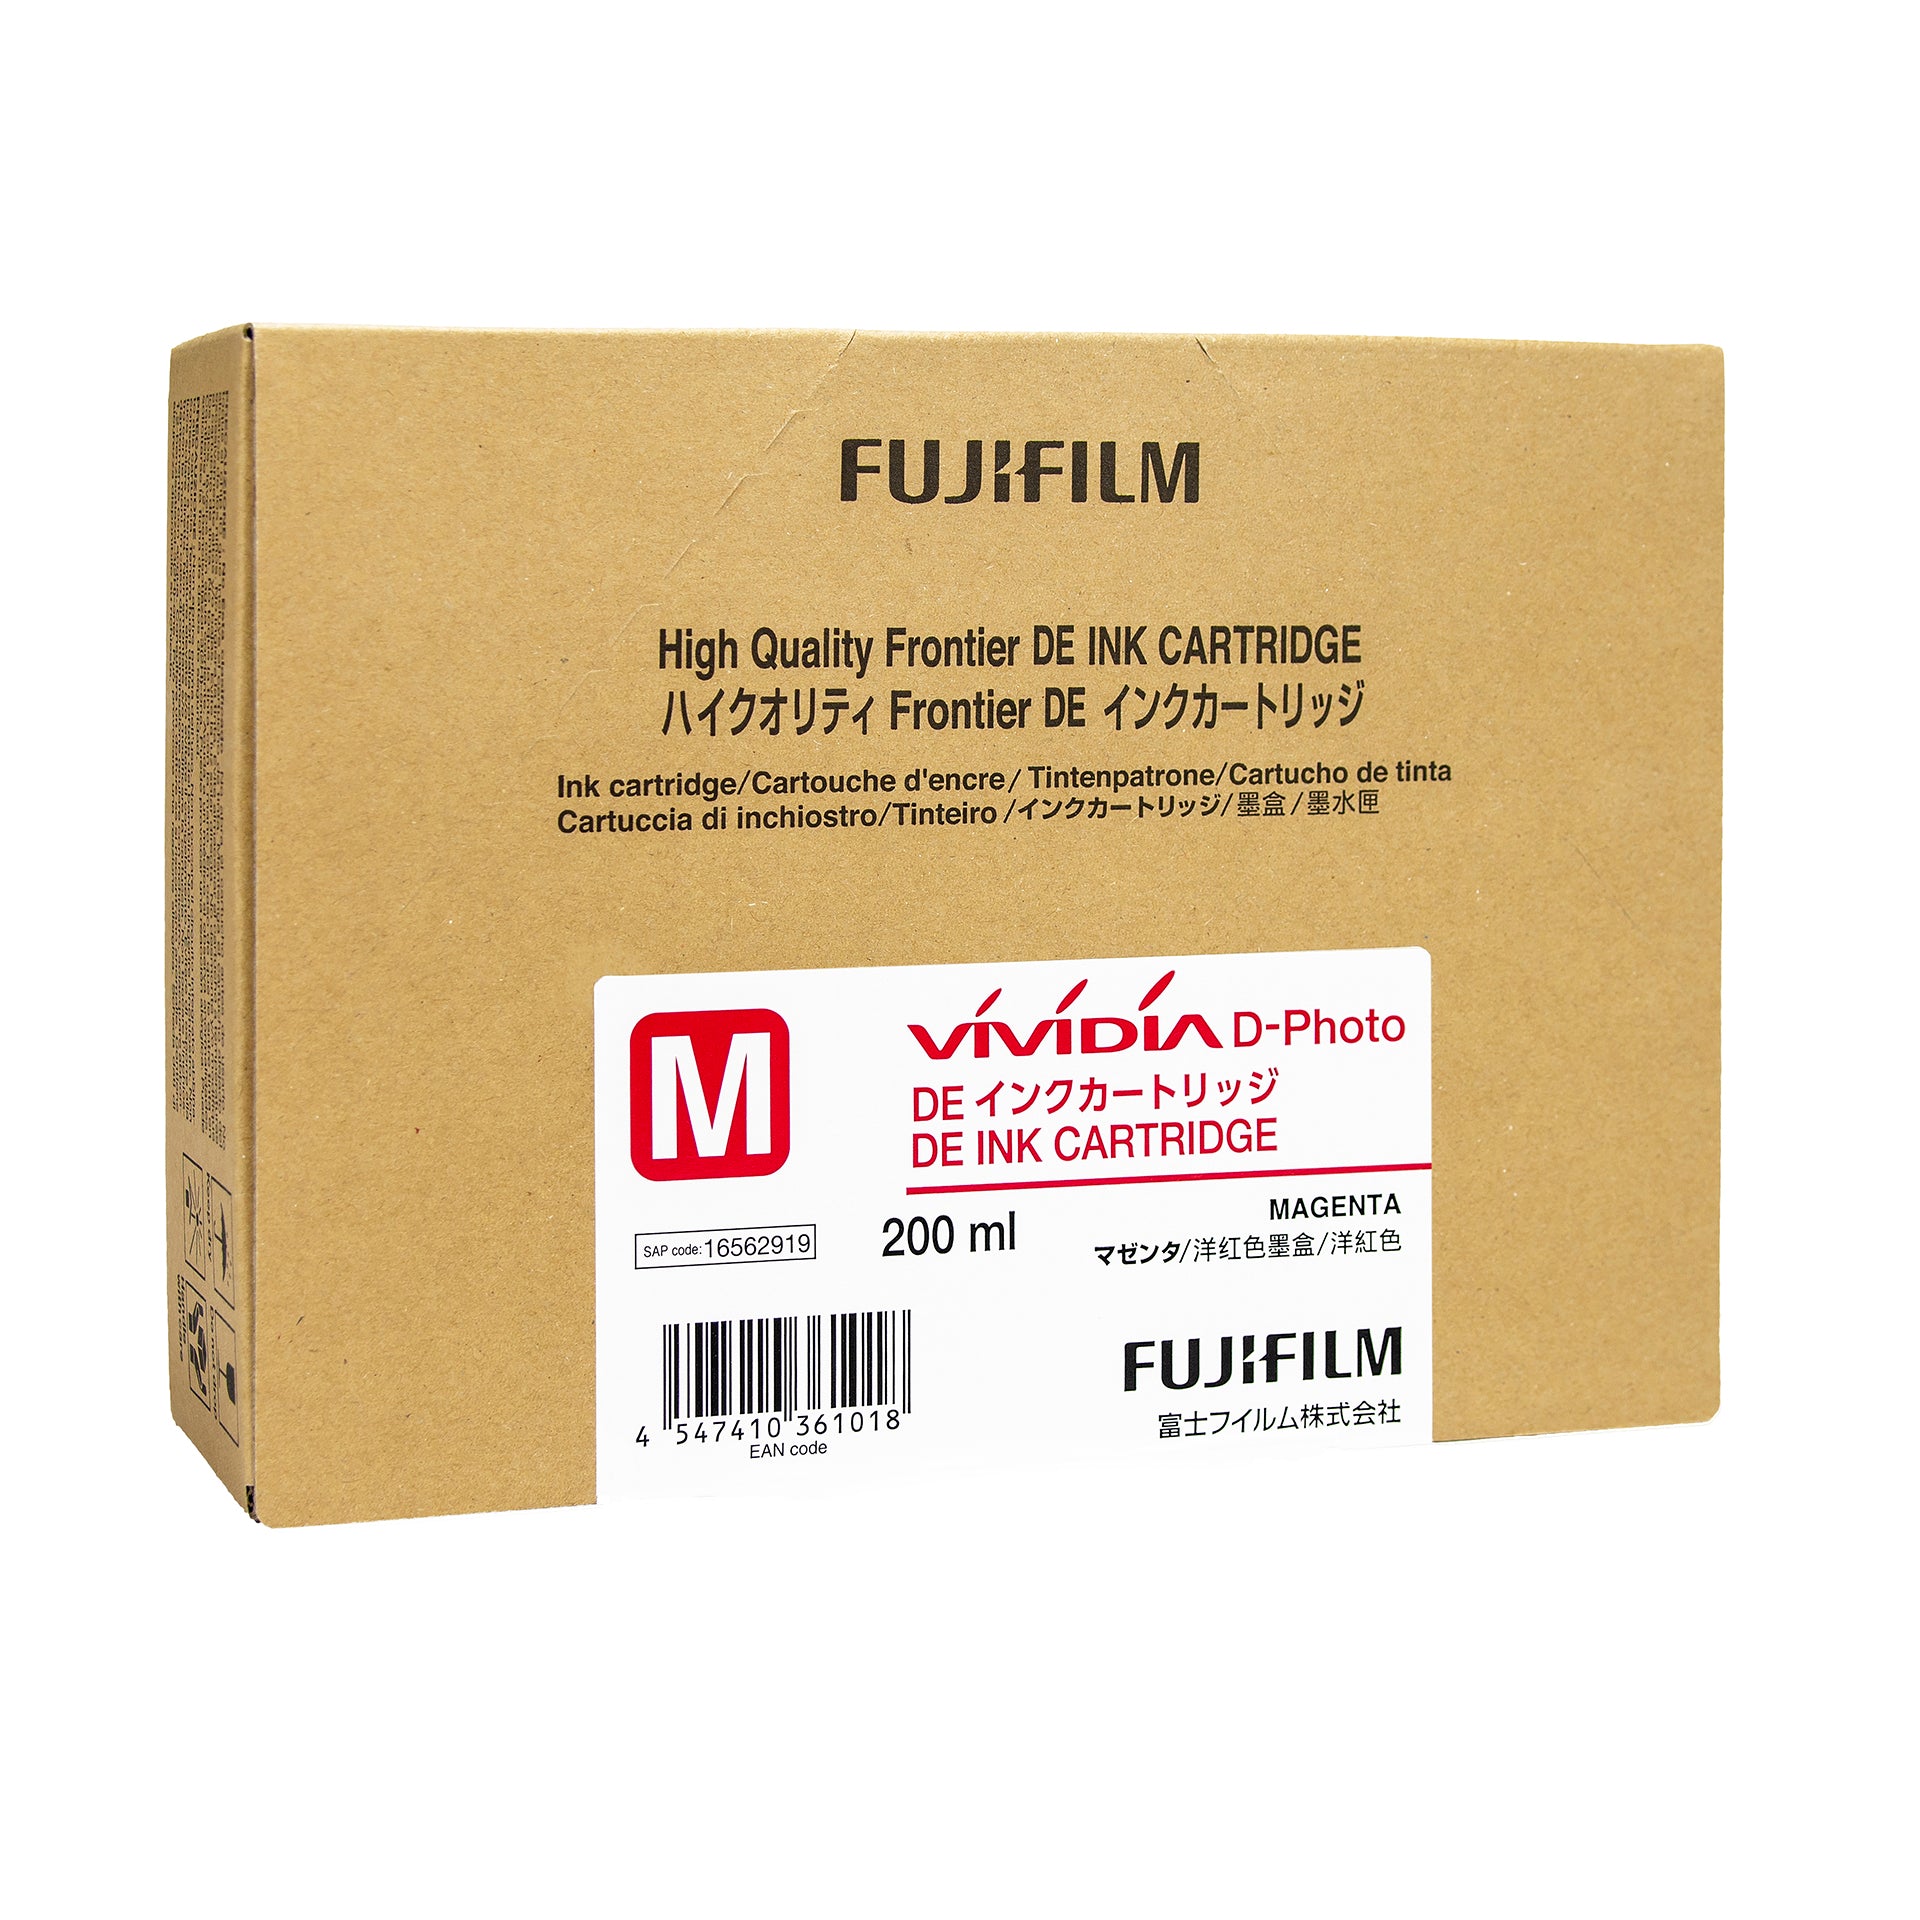 Fujifilm Frontier DE Ink Cartridge Magenta 200ml